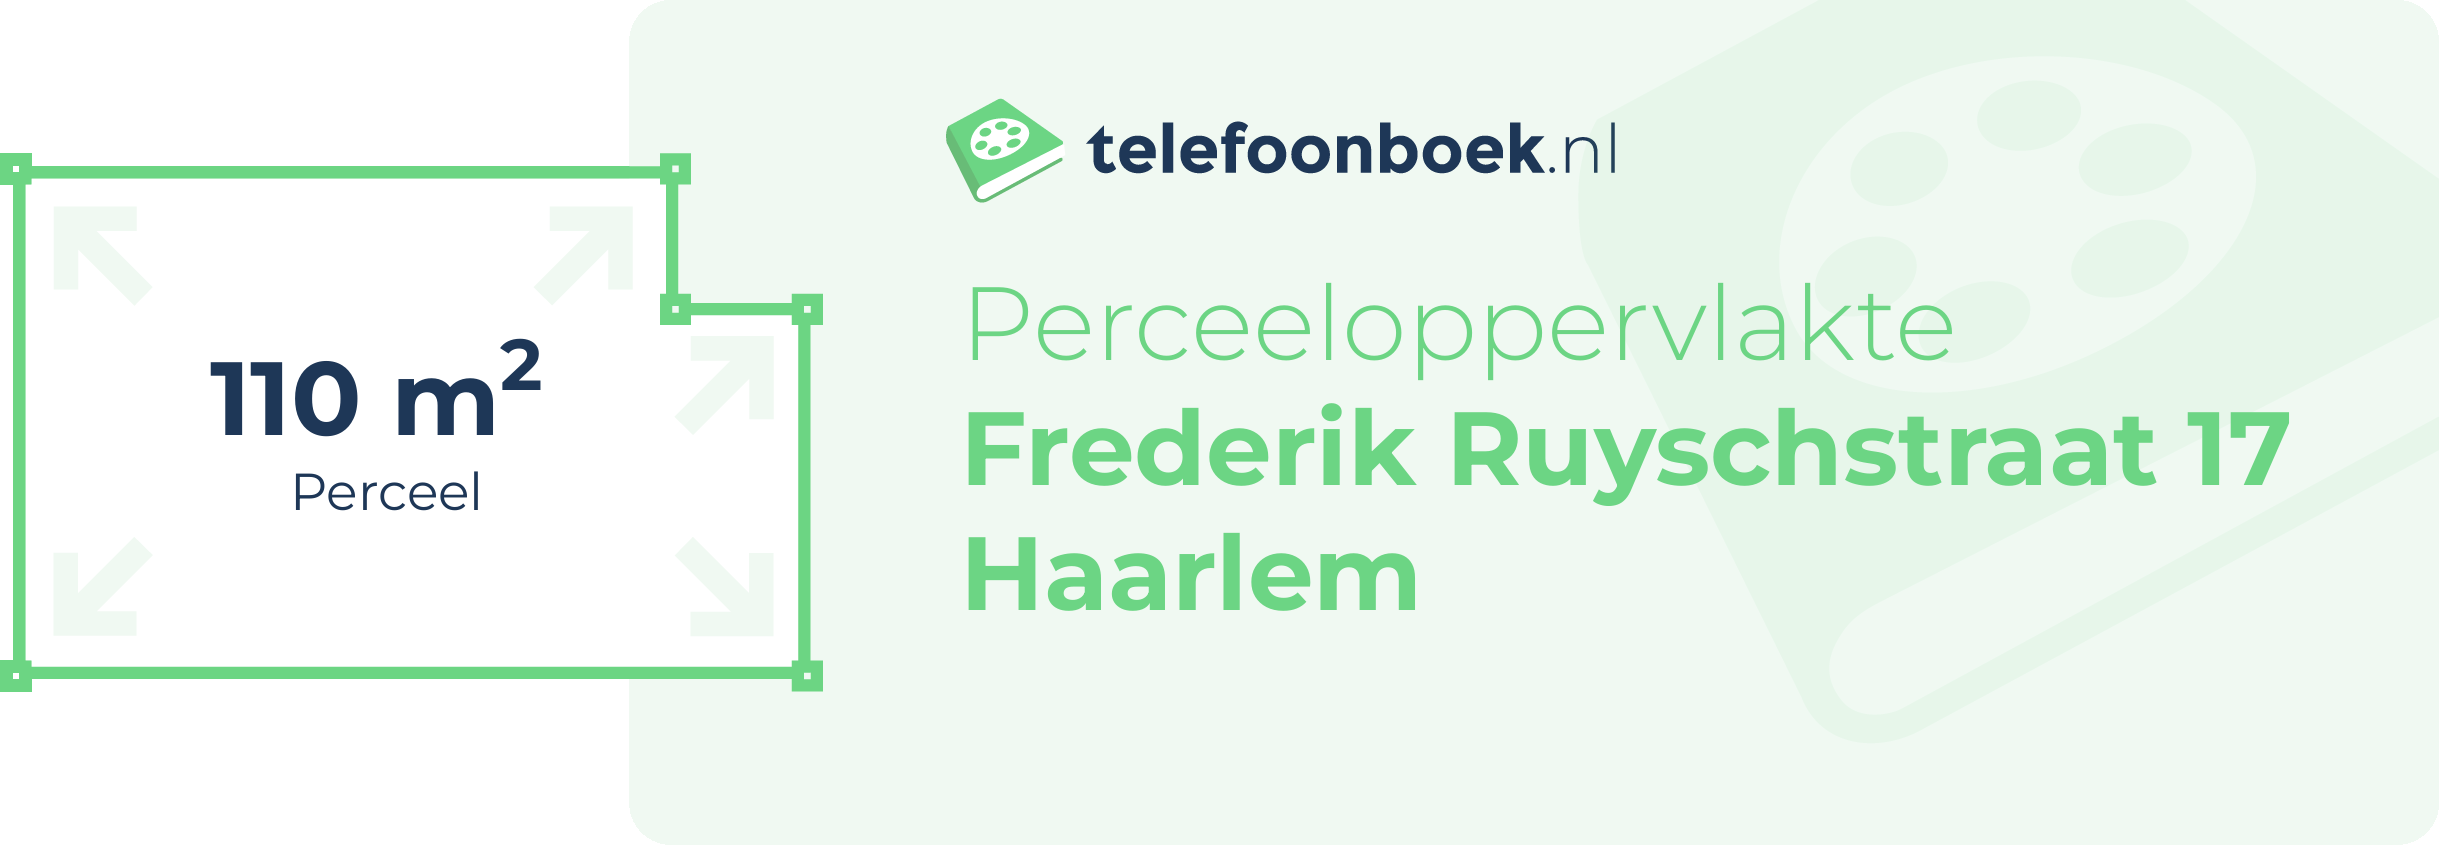 Perceeloppervlakte Frederik Ruyschstraat 17 Haarlem